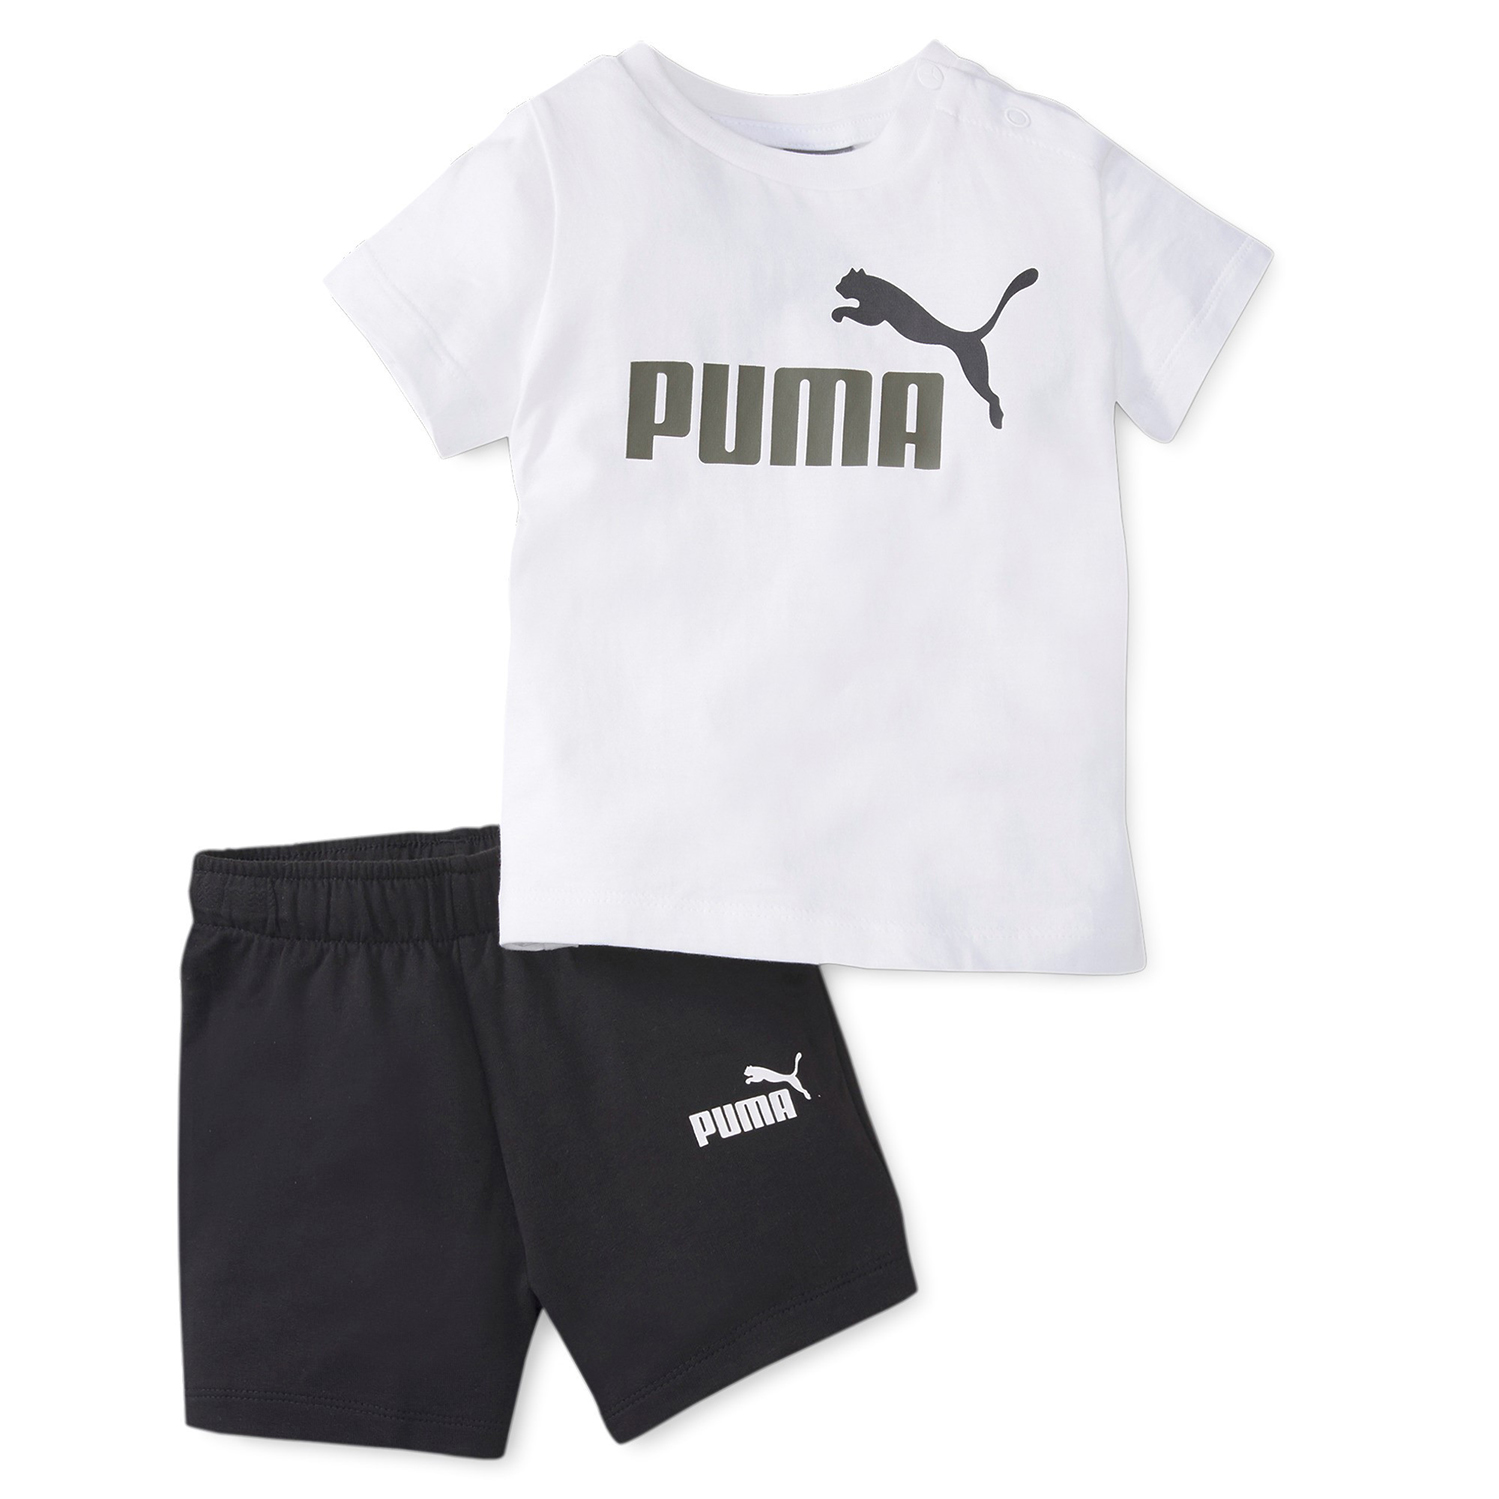 Puma Minicats Tee & Shorts Set schwarz/weiss 845839 02